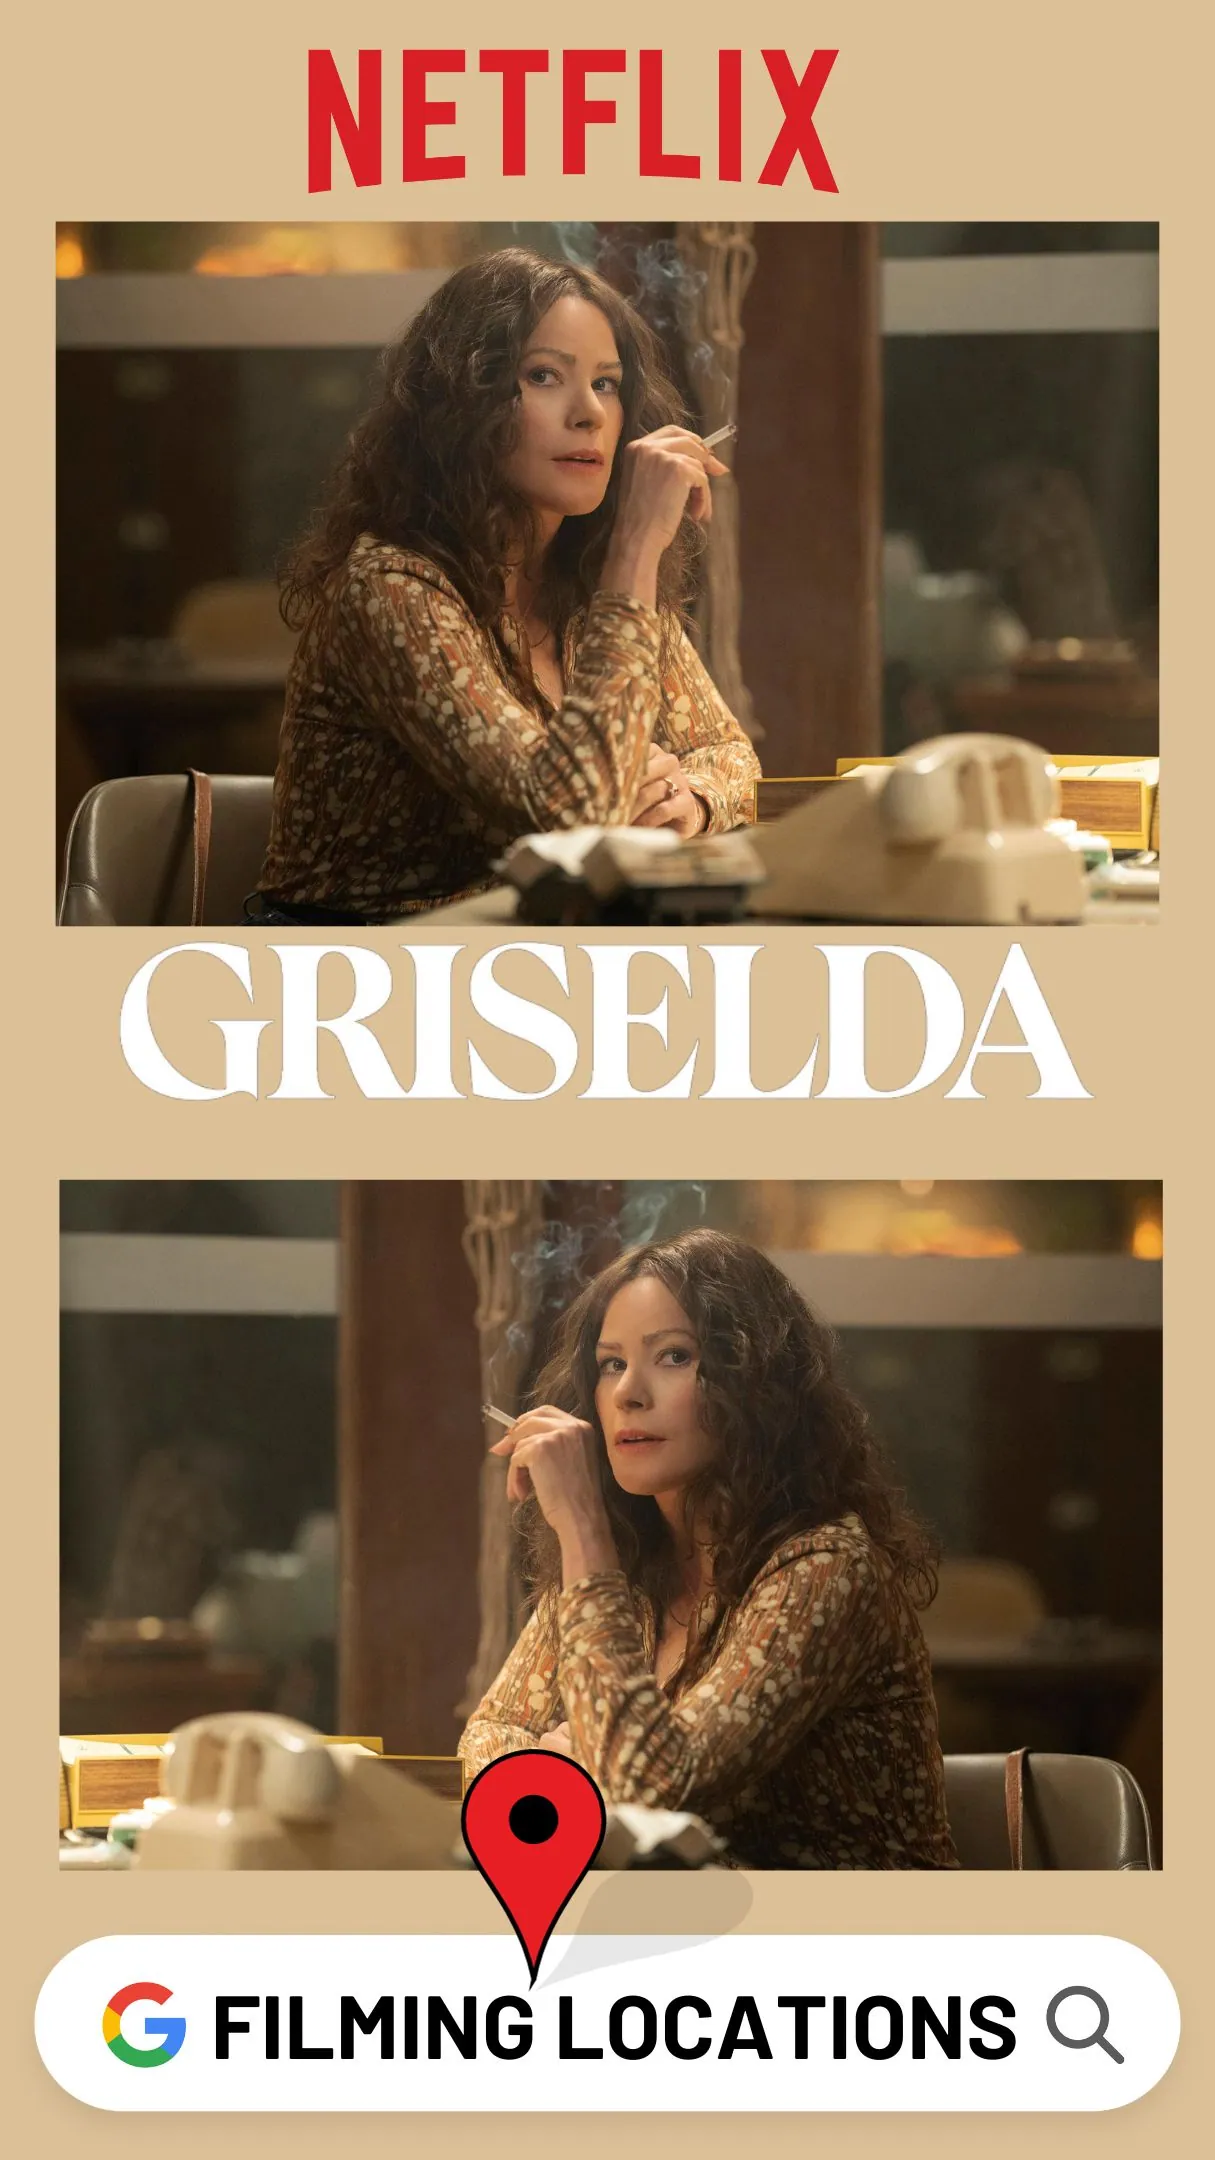 Griselda Filming Locations